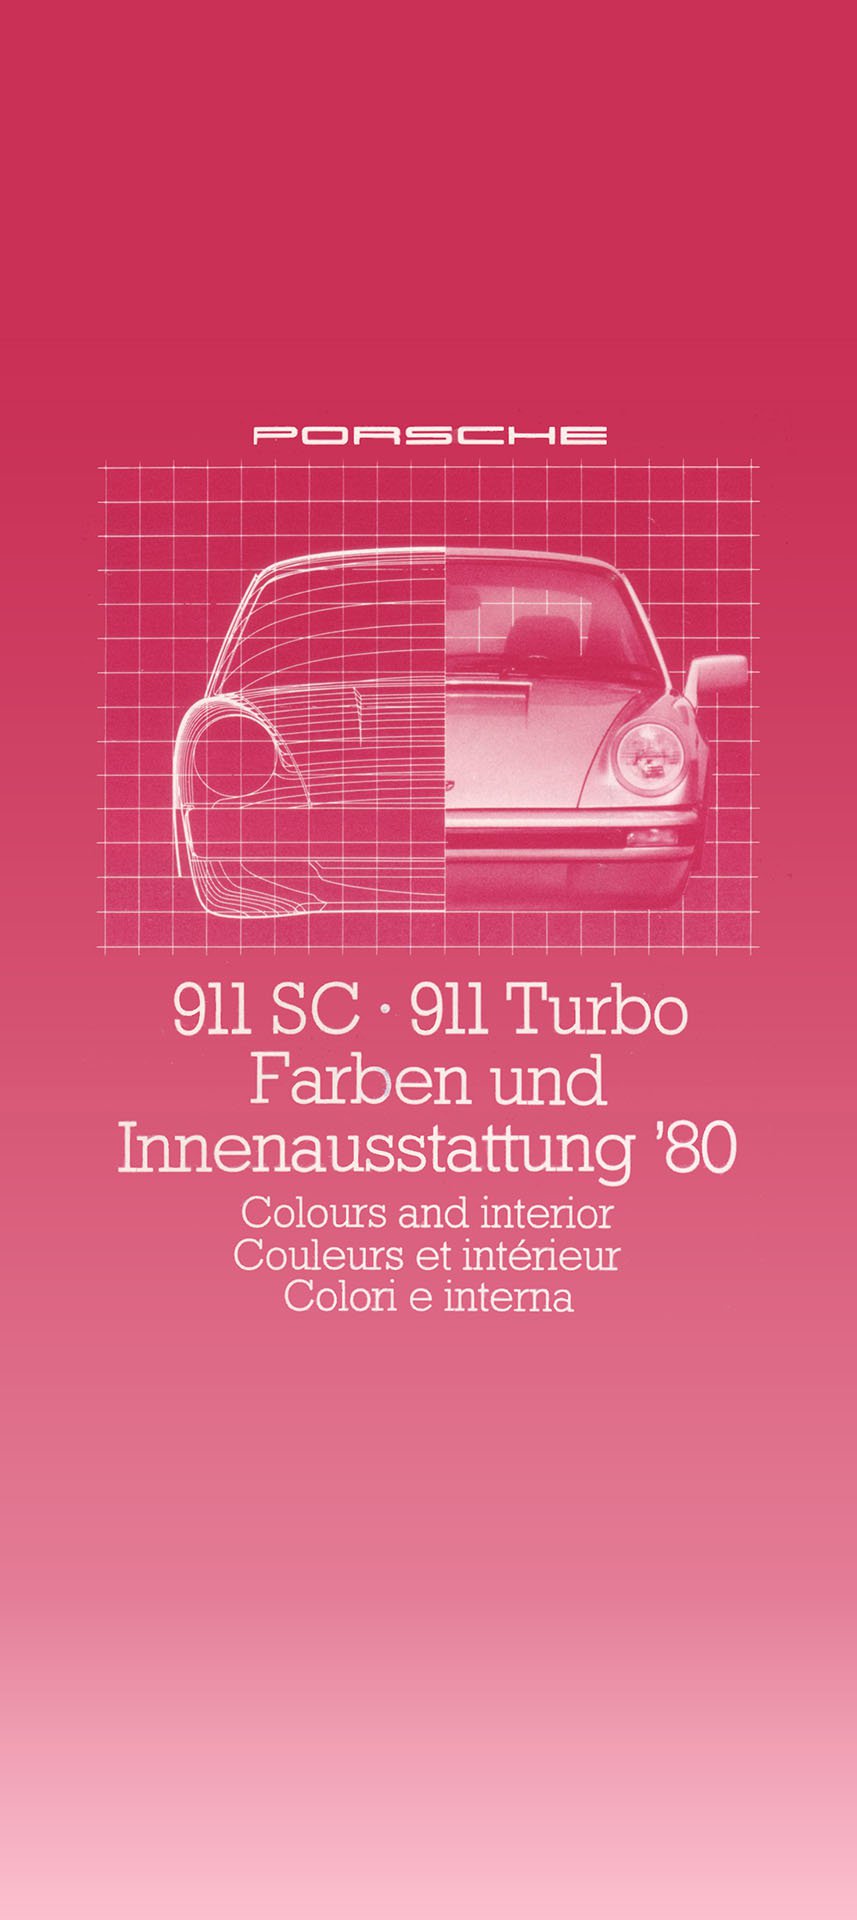 1980_-_Porsche_911_SC_-_911_Turbo_-_Farben_und_Innenausstattung.jpg